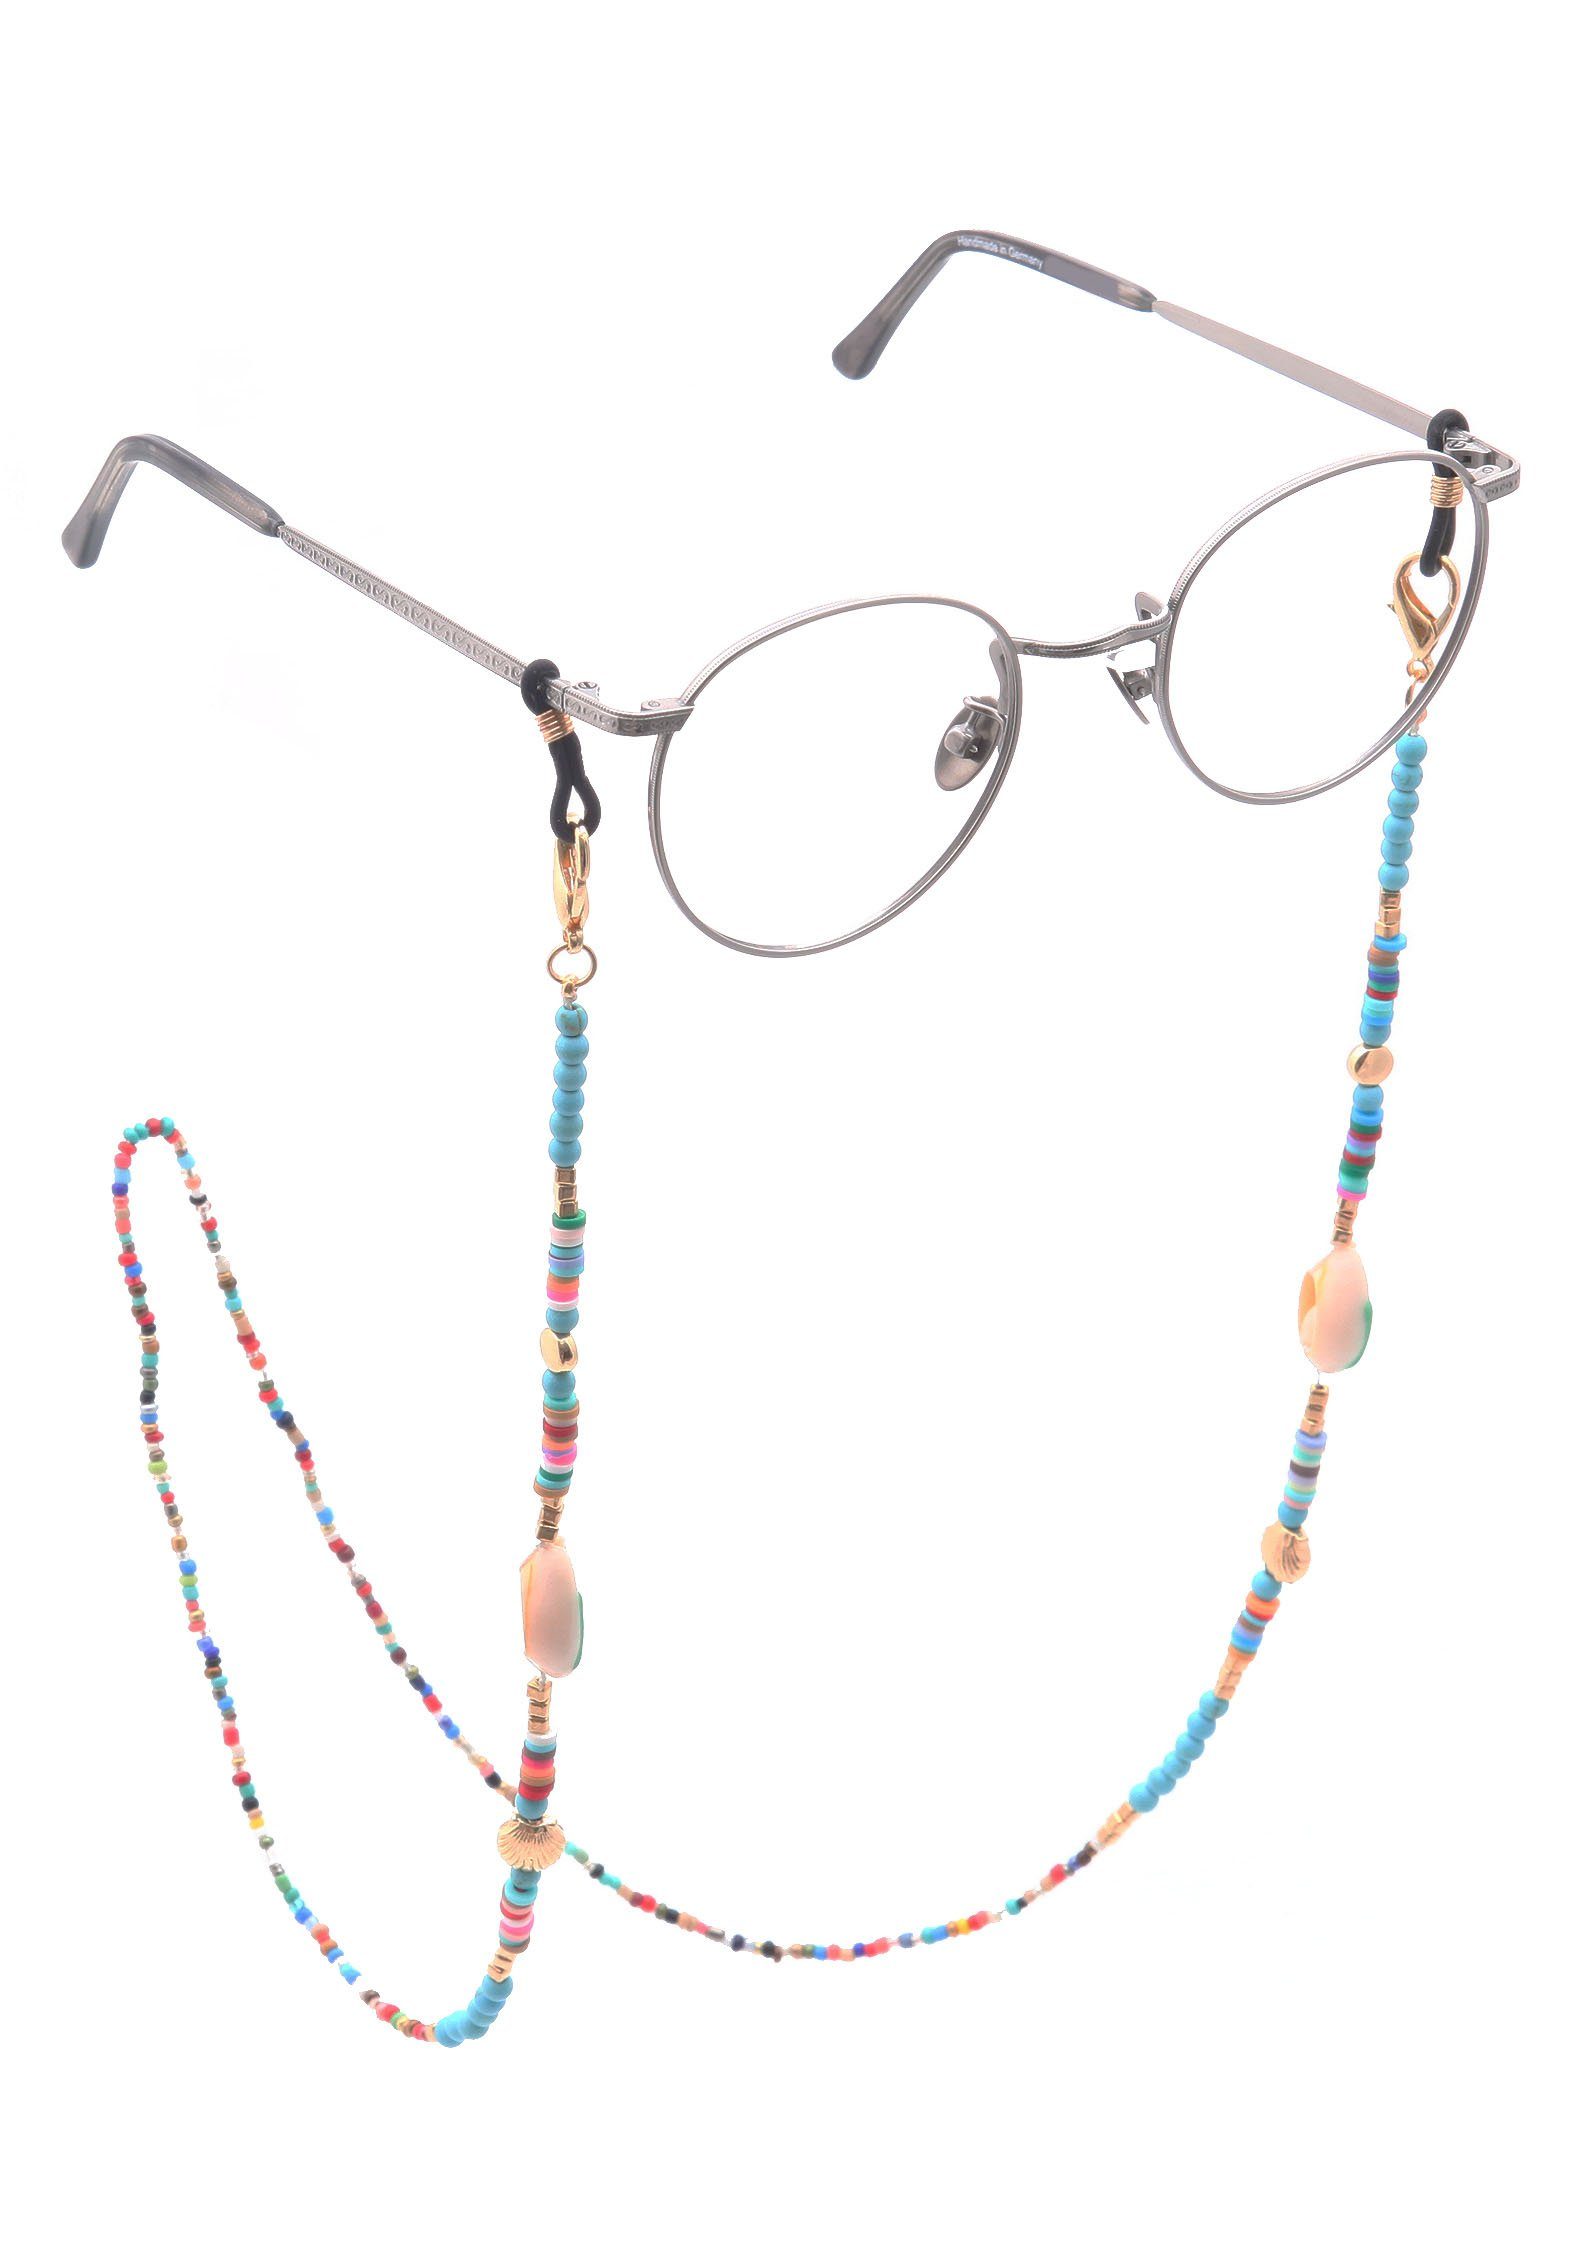 Muscheln, Karabinerverschluss Glasperlen, maritim, mit Natursteinen, Firetti und Brillenkette bunt, Acryl-